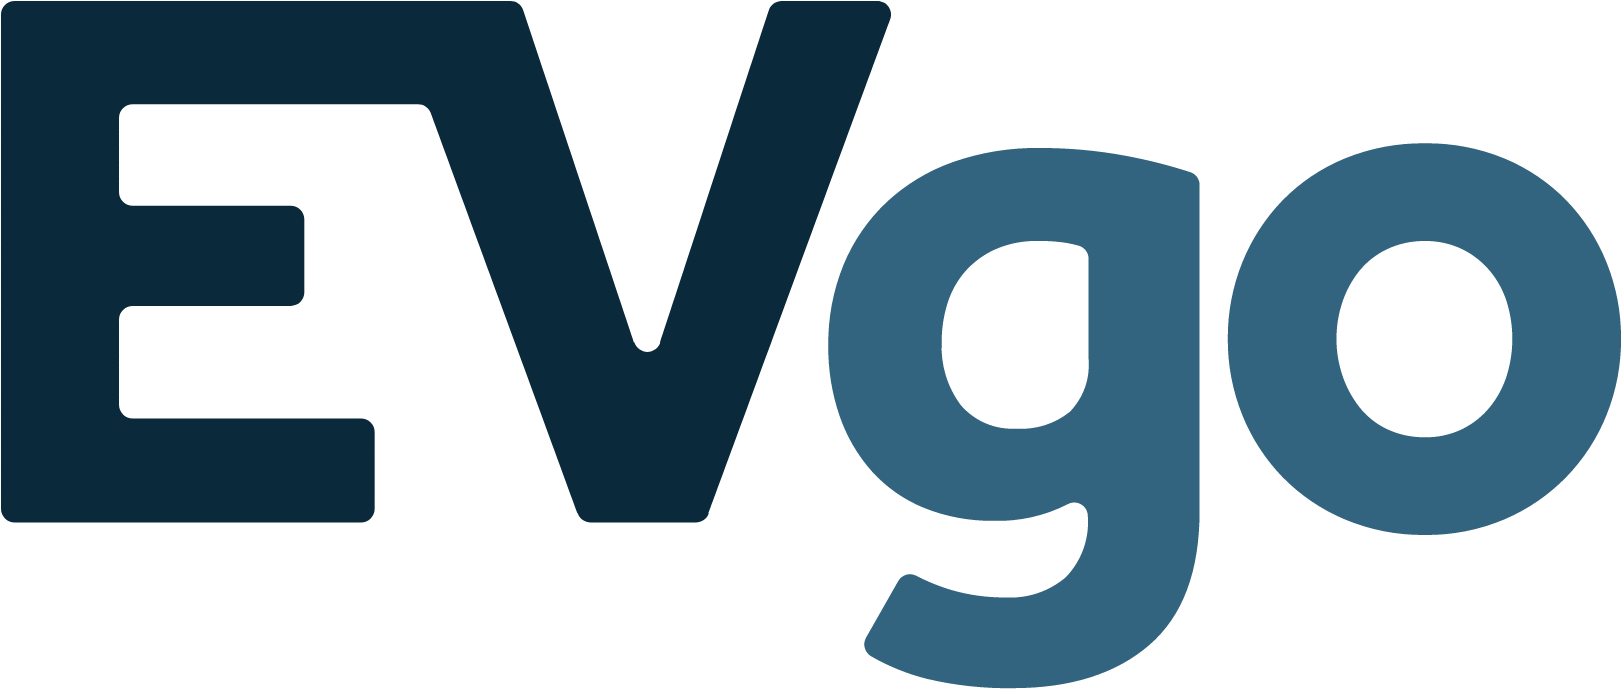 EVgo Logo (transparentes PNG)